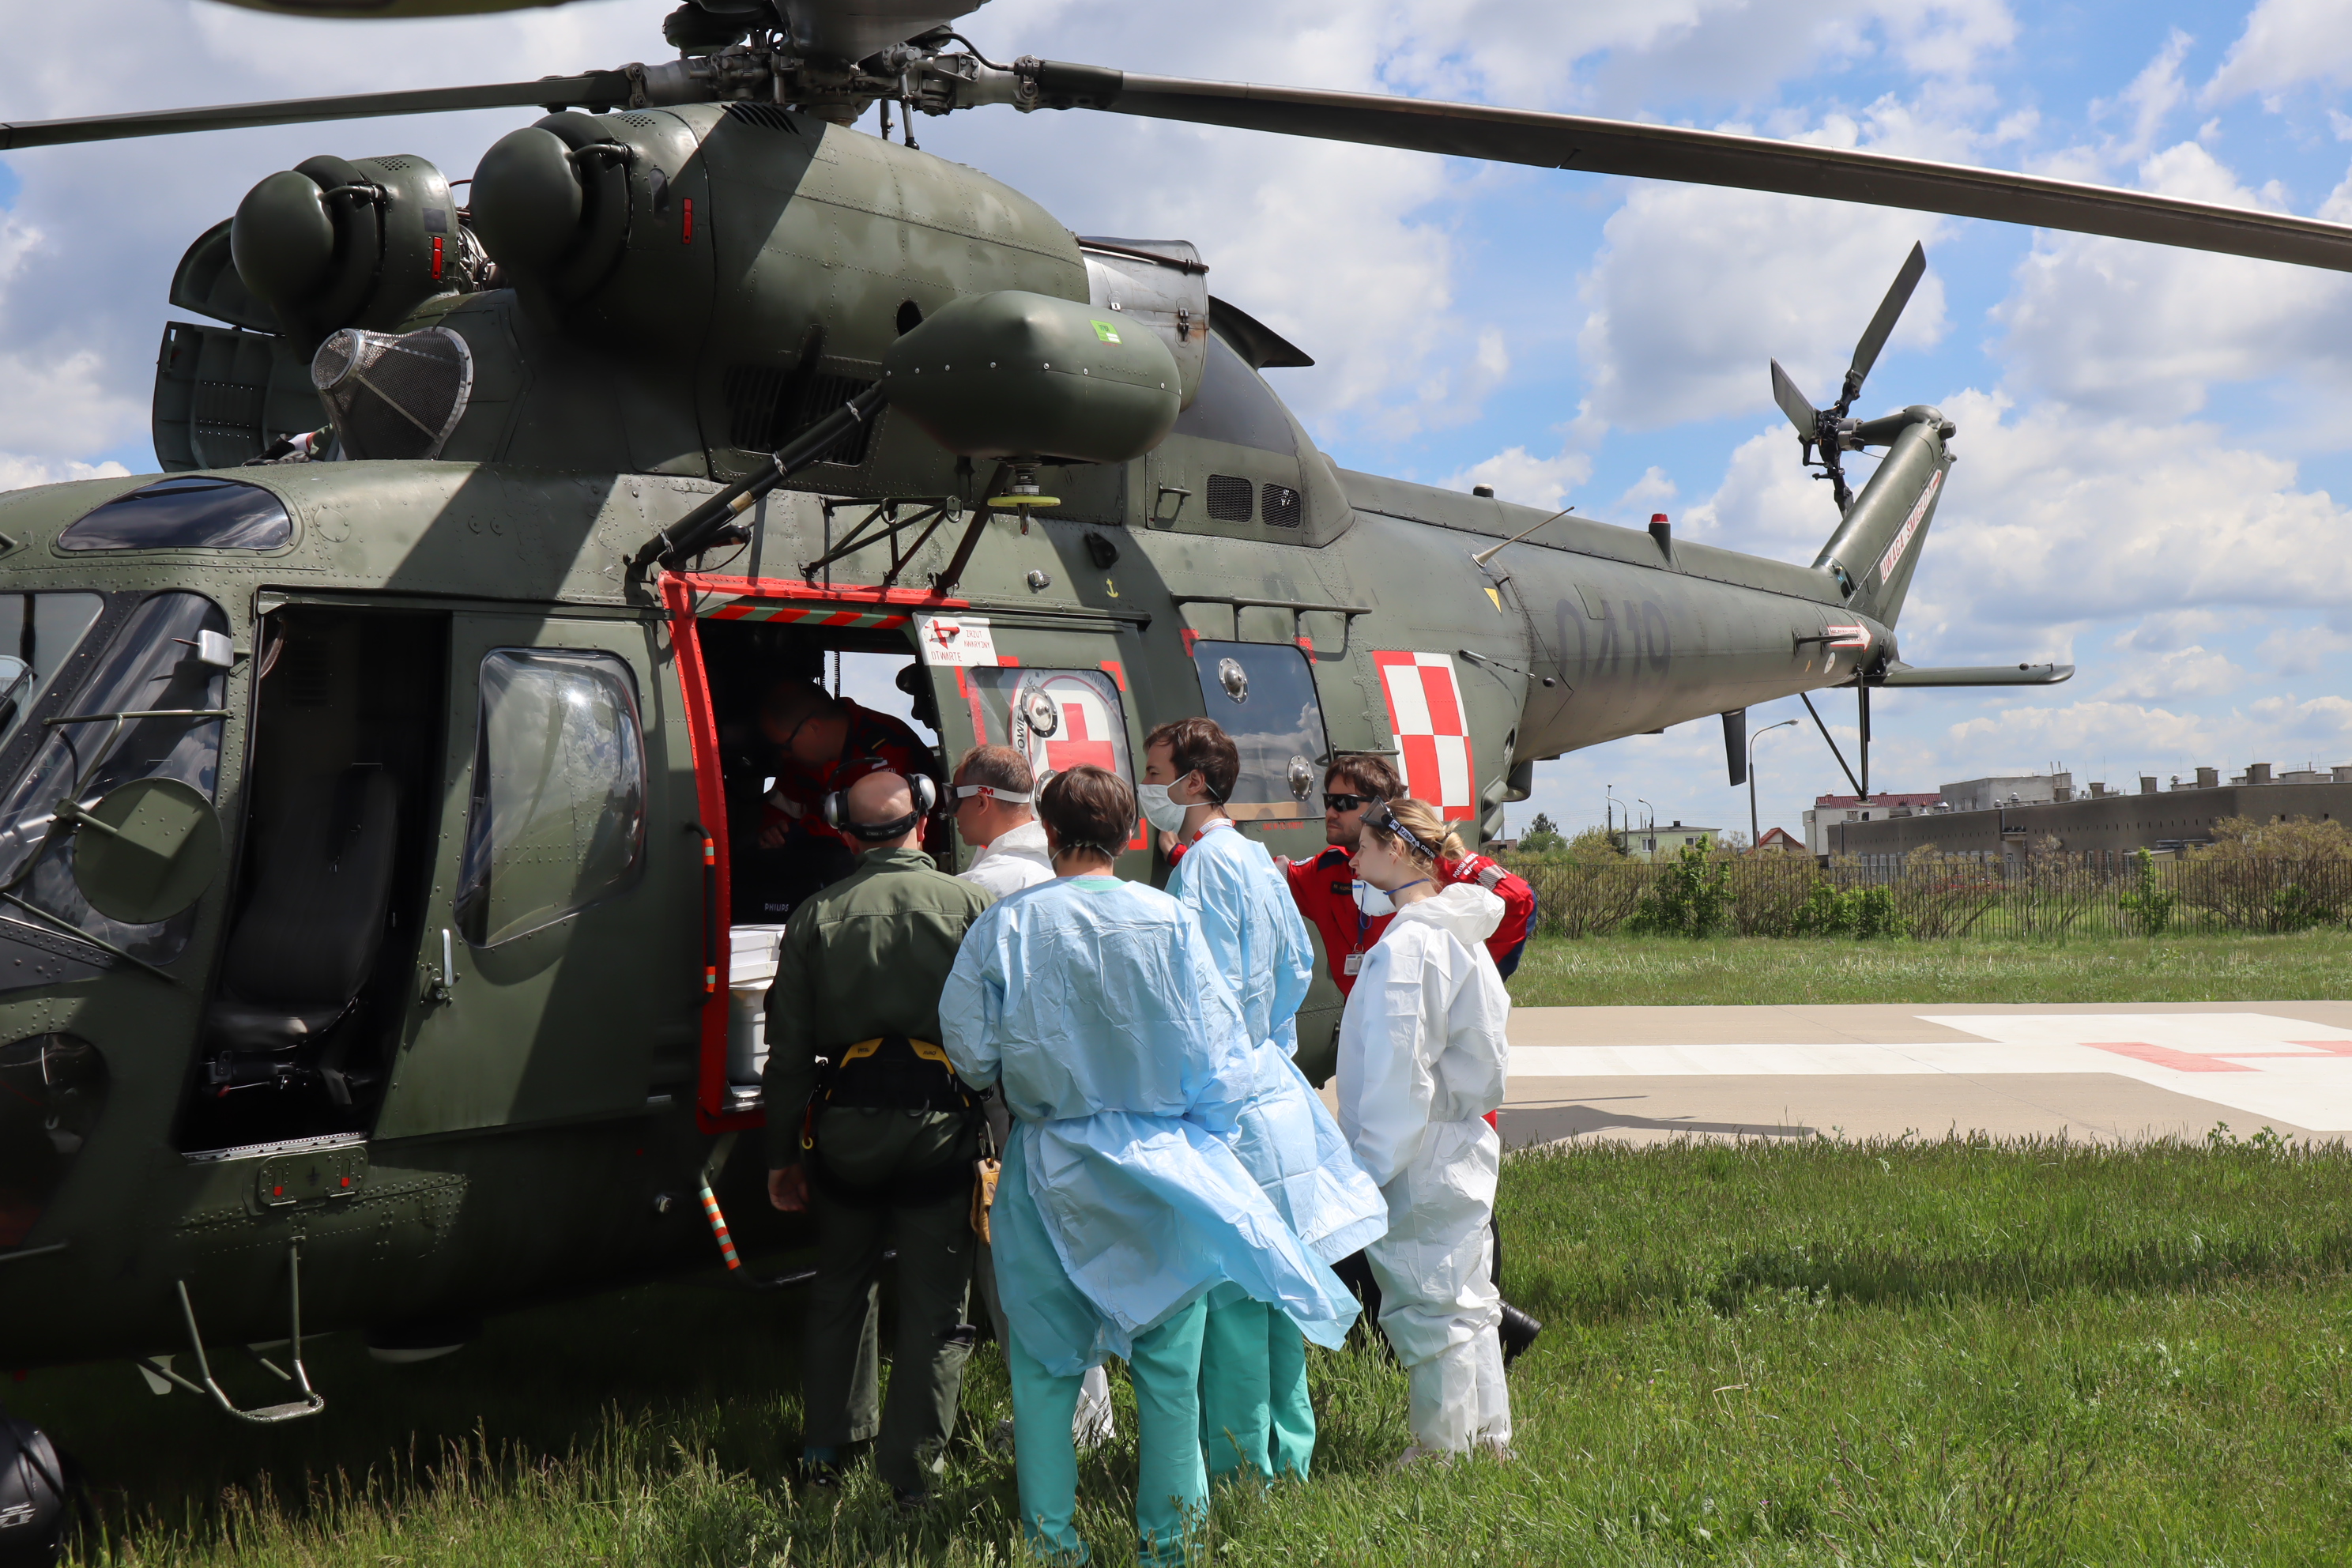 Przeniesienie do informacji o tytule: Wojskowy śmigłowiec przetransportował pacjenta 